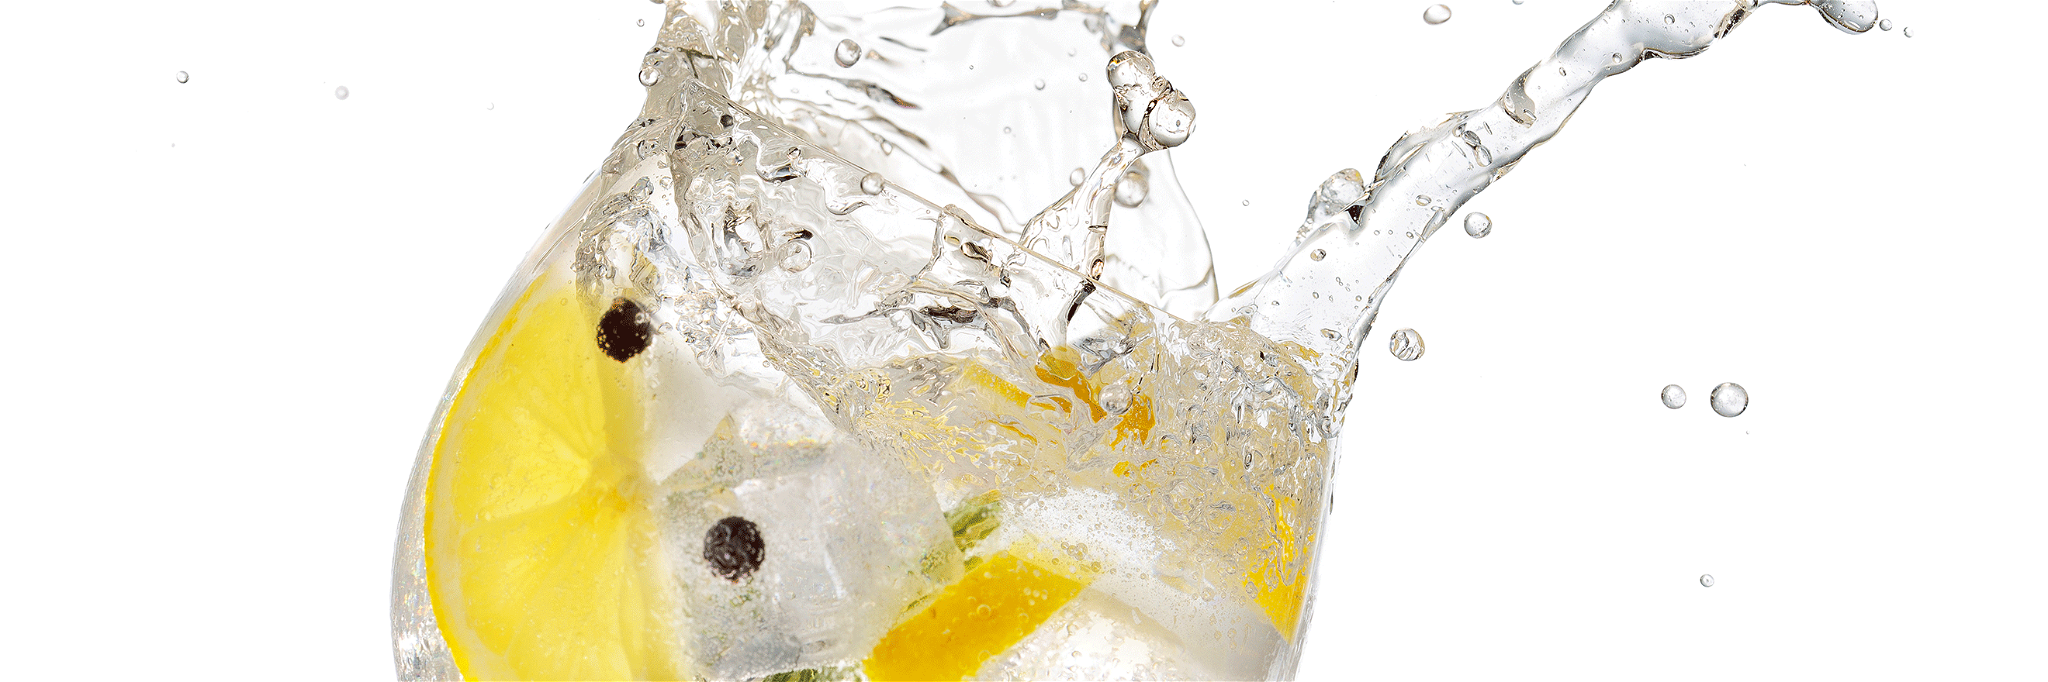 Neben den klassichen Tonic-Waters können auch zahlreiche Erfrischungsgetränke für guten Gin verwendet werden.